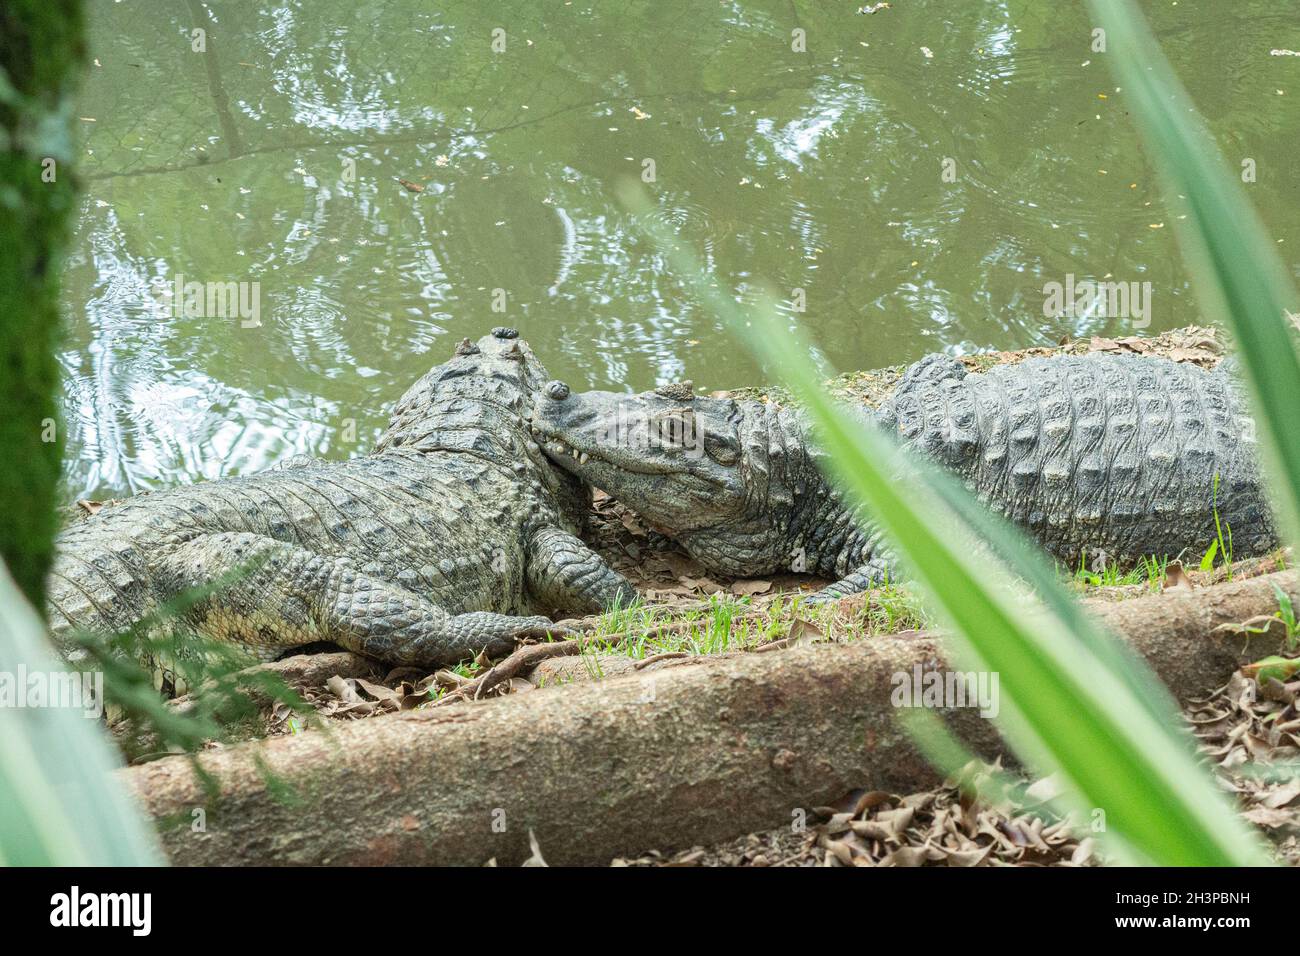 Zwei Alligatoren mit gelbem Bramble, die sich am Ufer eines Sees ausruhen und sonnen. Der Alligator ist ein natürliches Raubtier an der Spitze der Nahrungskette. Stockfoto